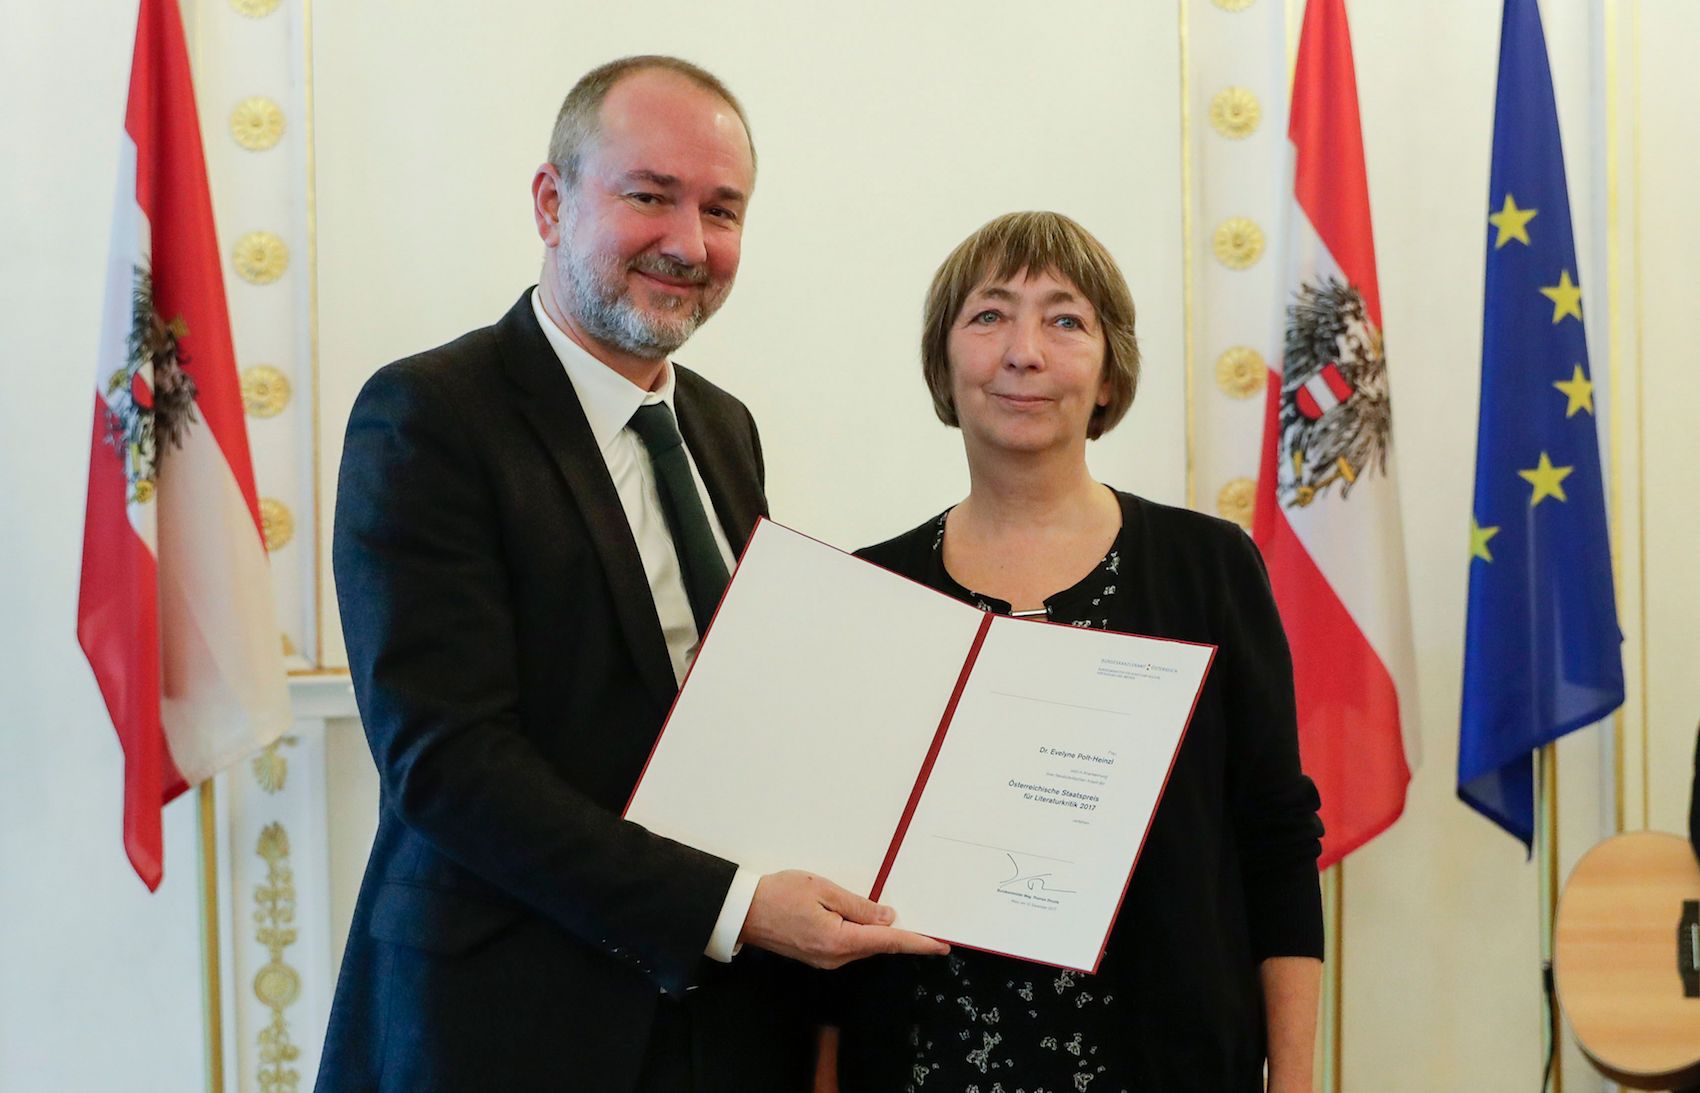 Kulturminister Thomas Drozda verlieh den Staatspreis für Literaturkritik 2017 an Evelyne Polt-Heinzl